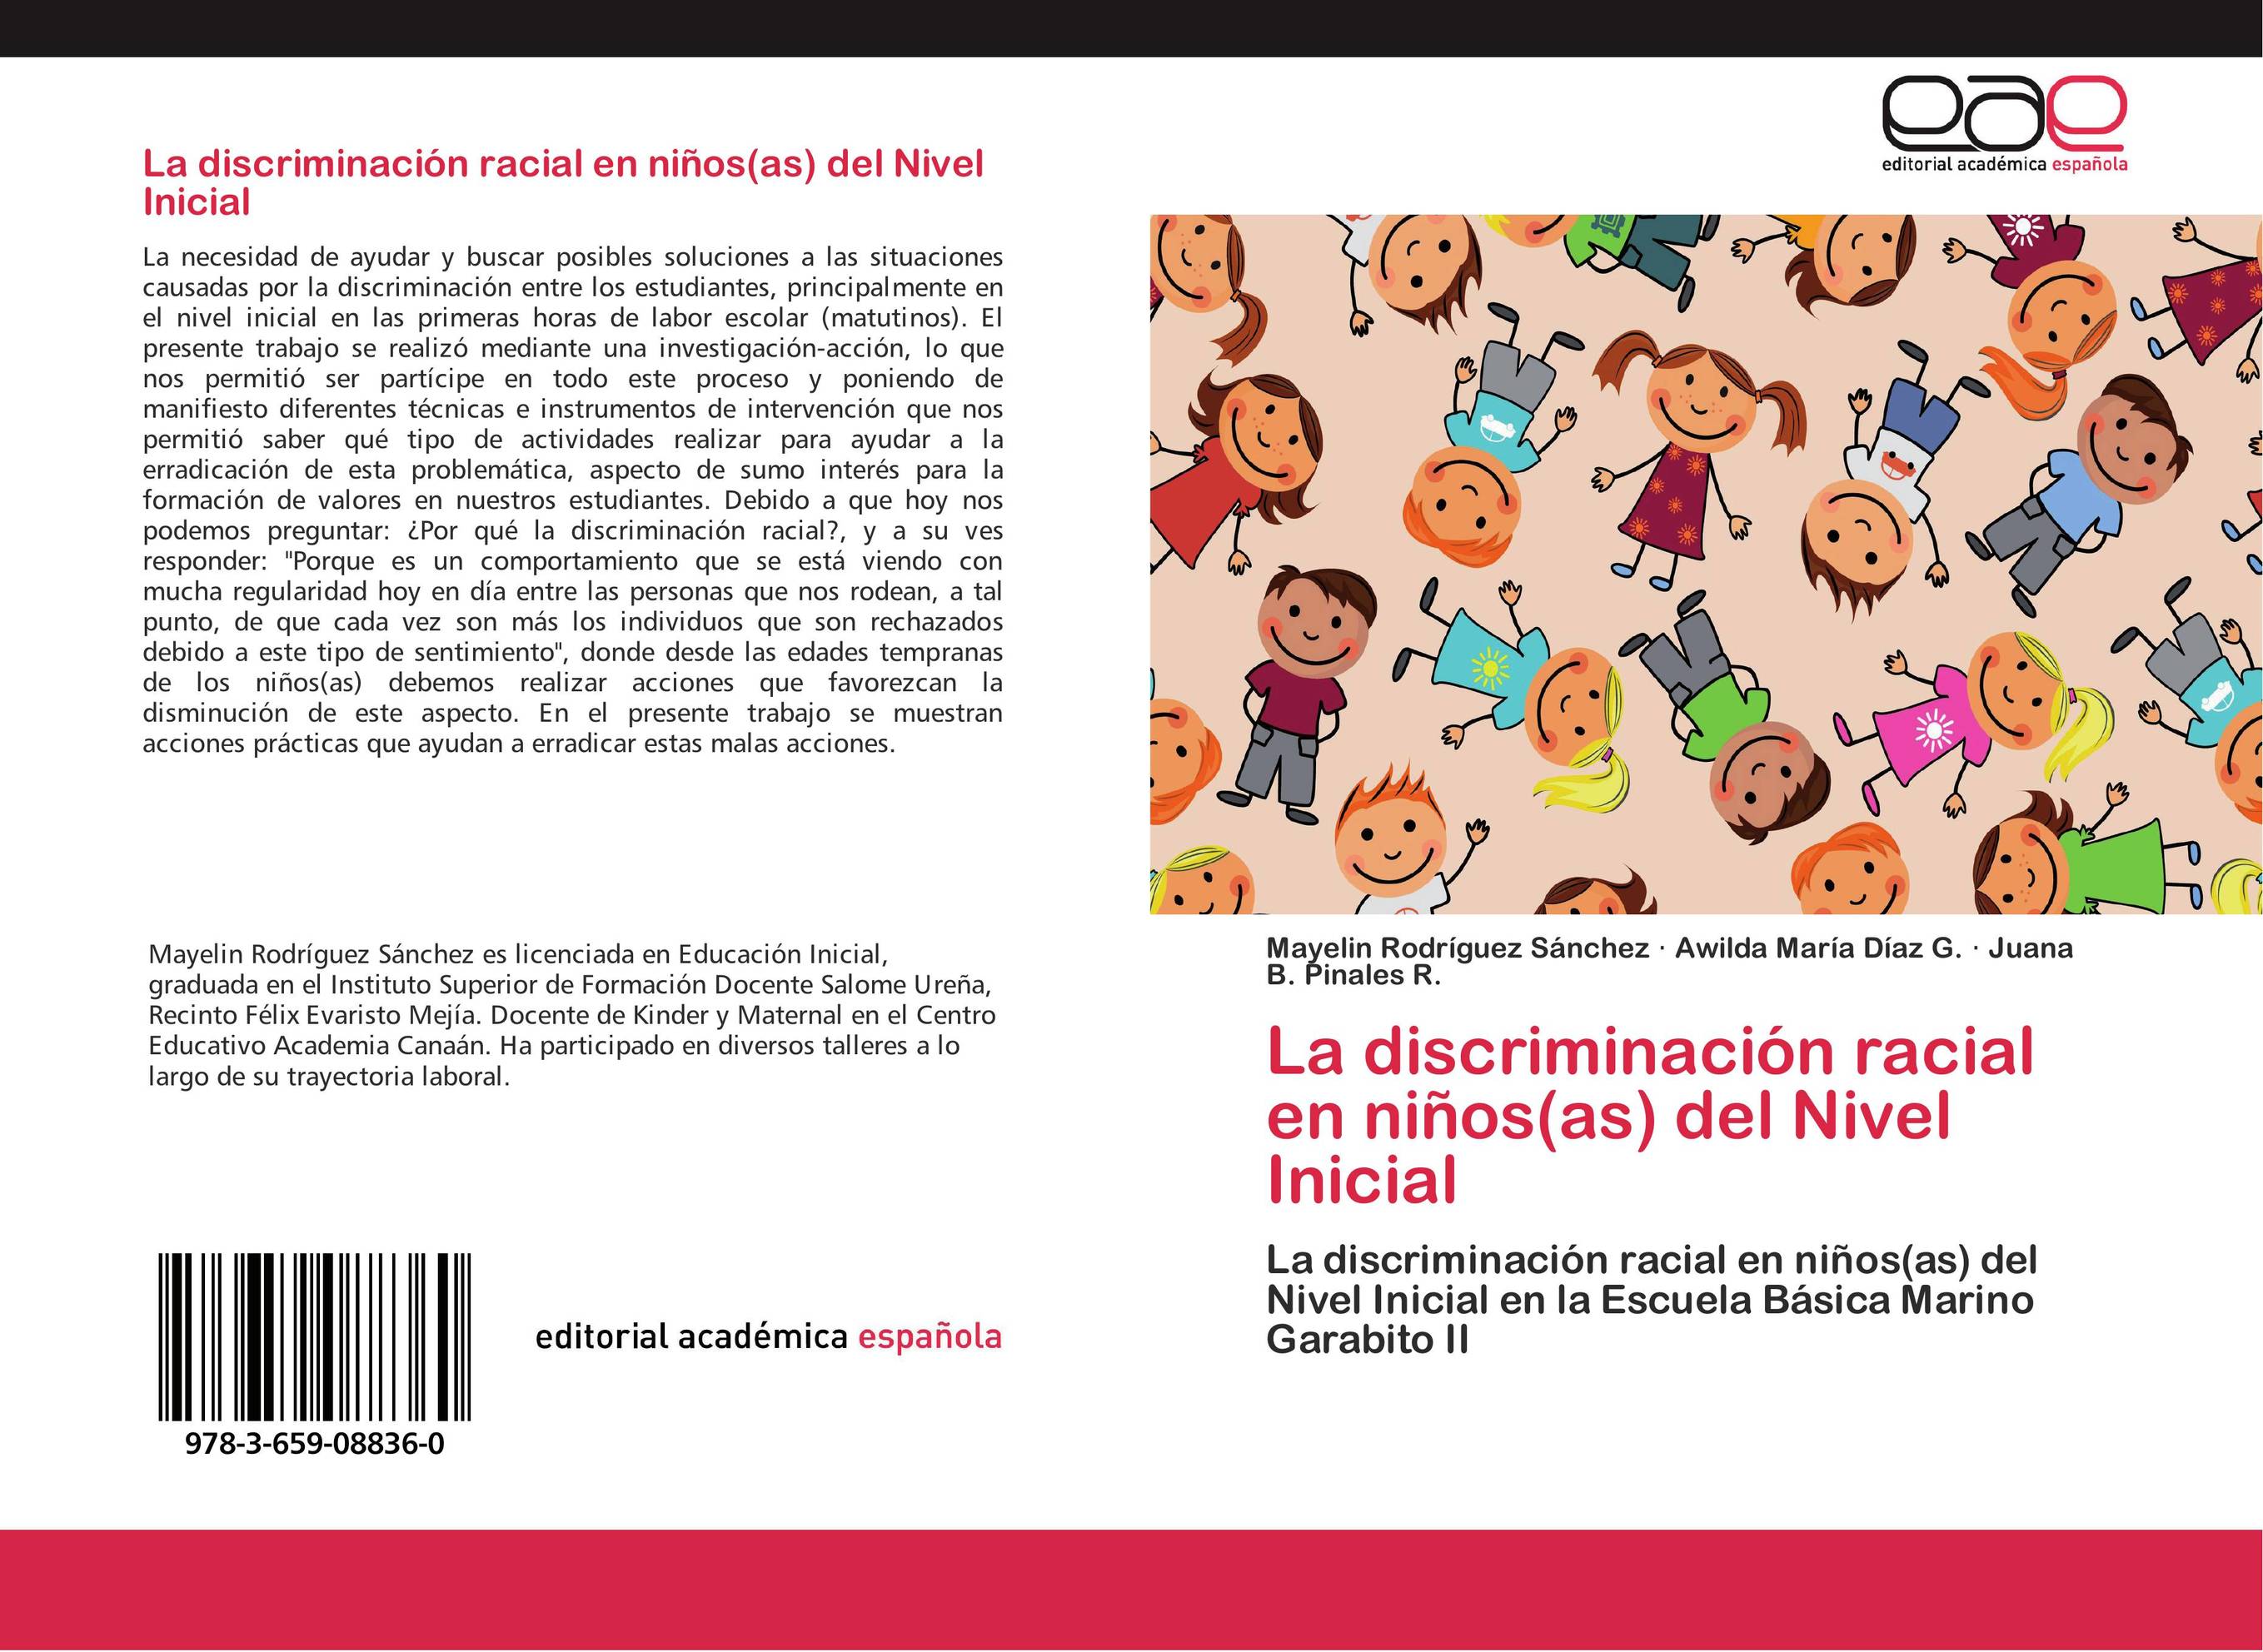 La discriminación racial en niños(as) del Nivel Inicial